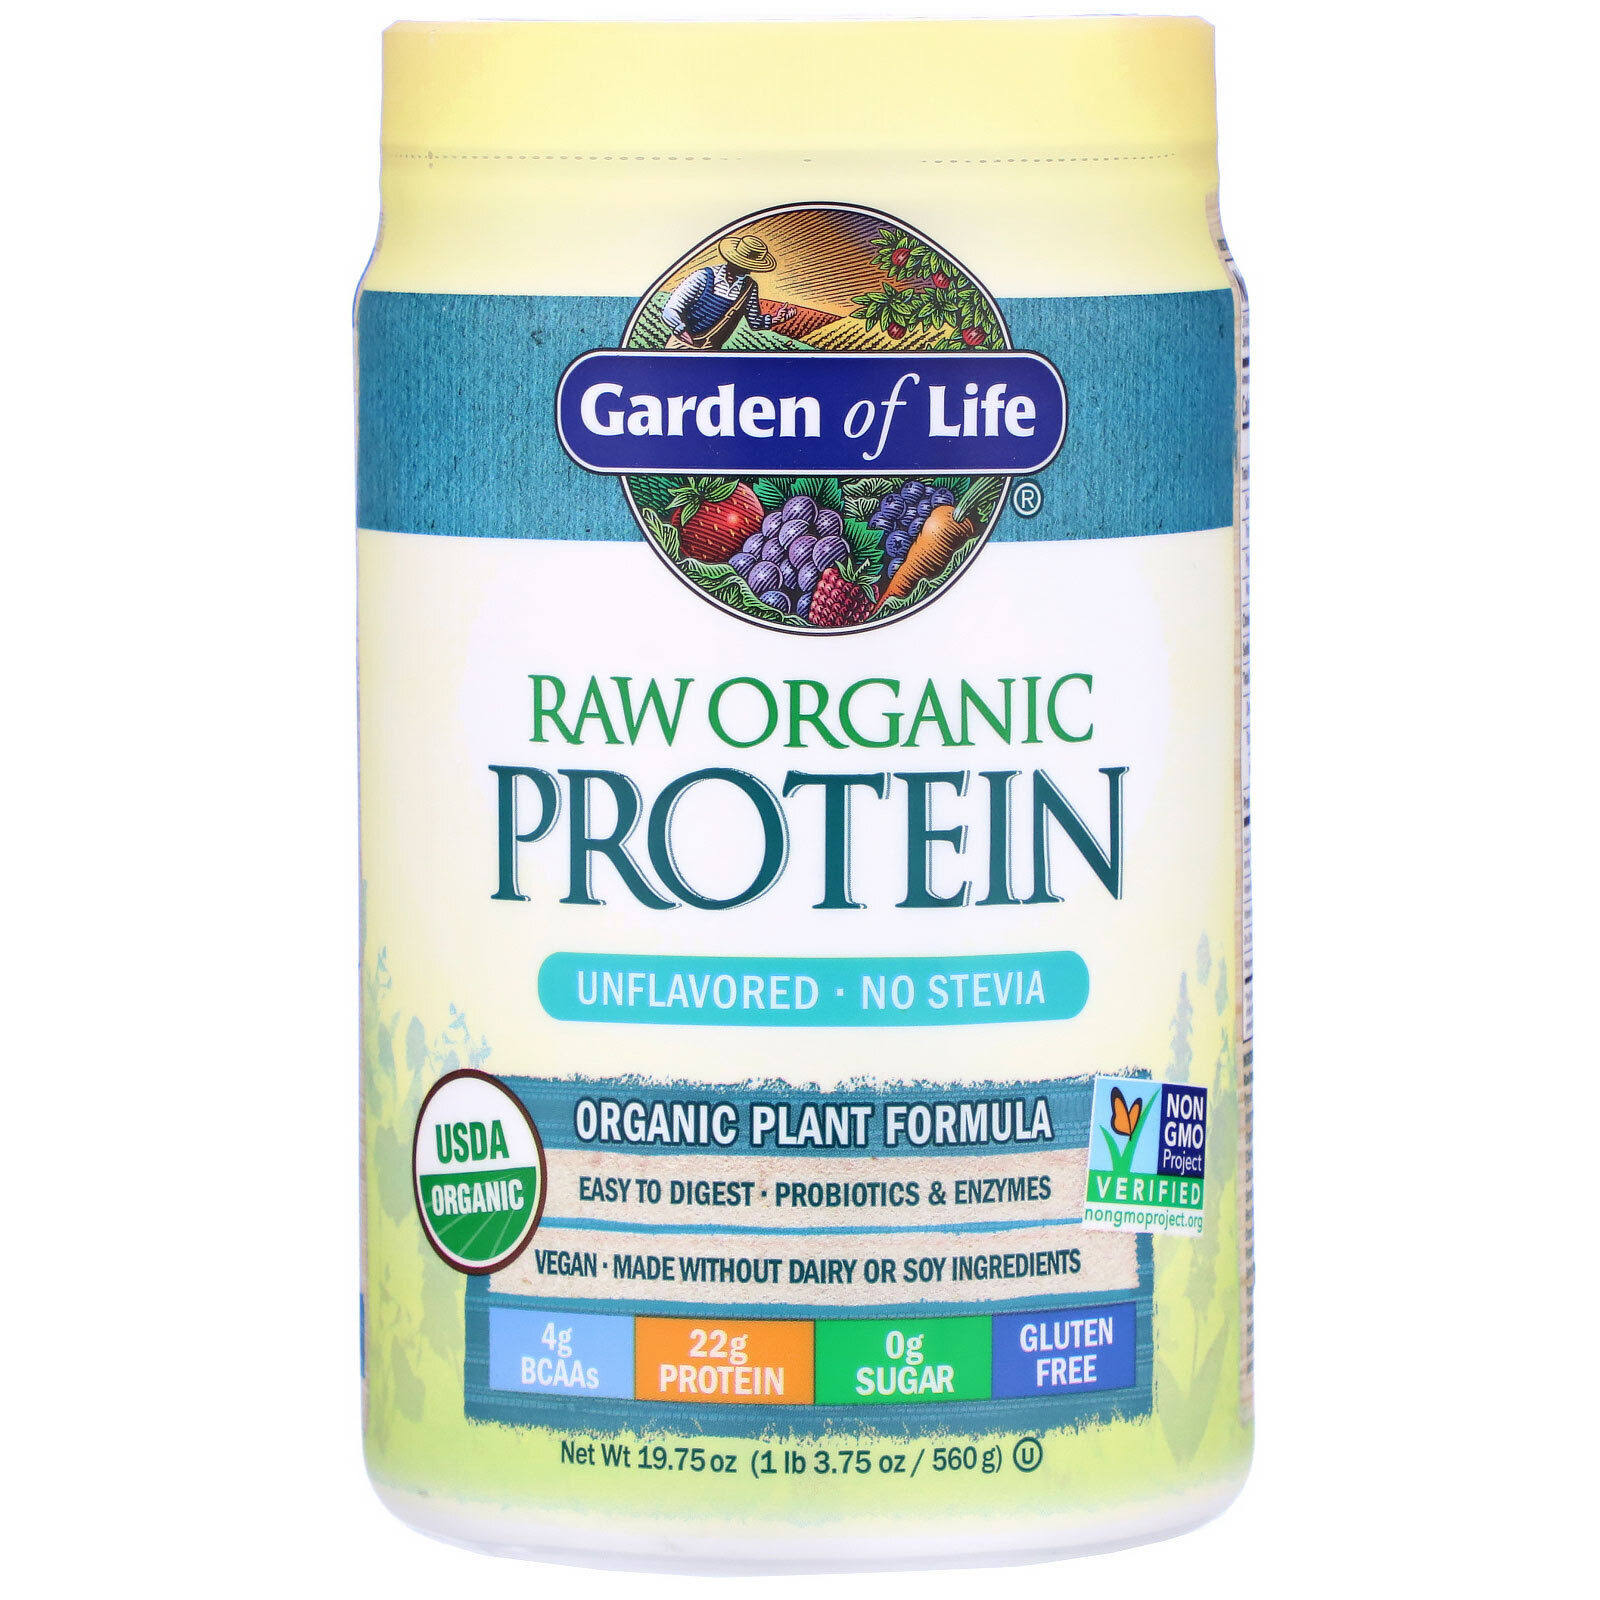 Garden of Life Raw Organic Protein Powder Supplement - 22oz